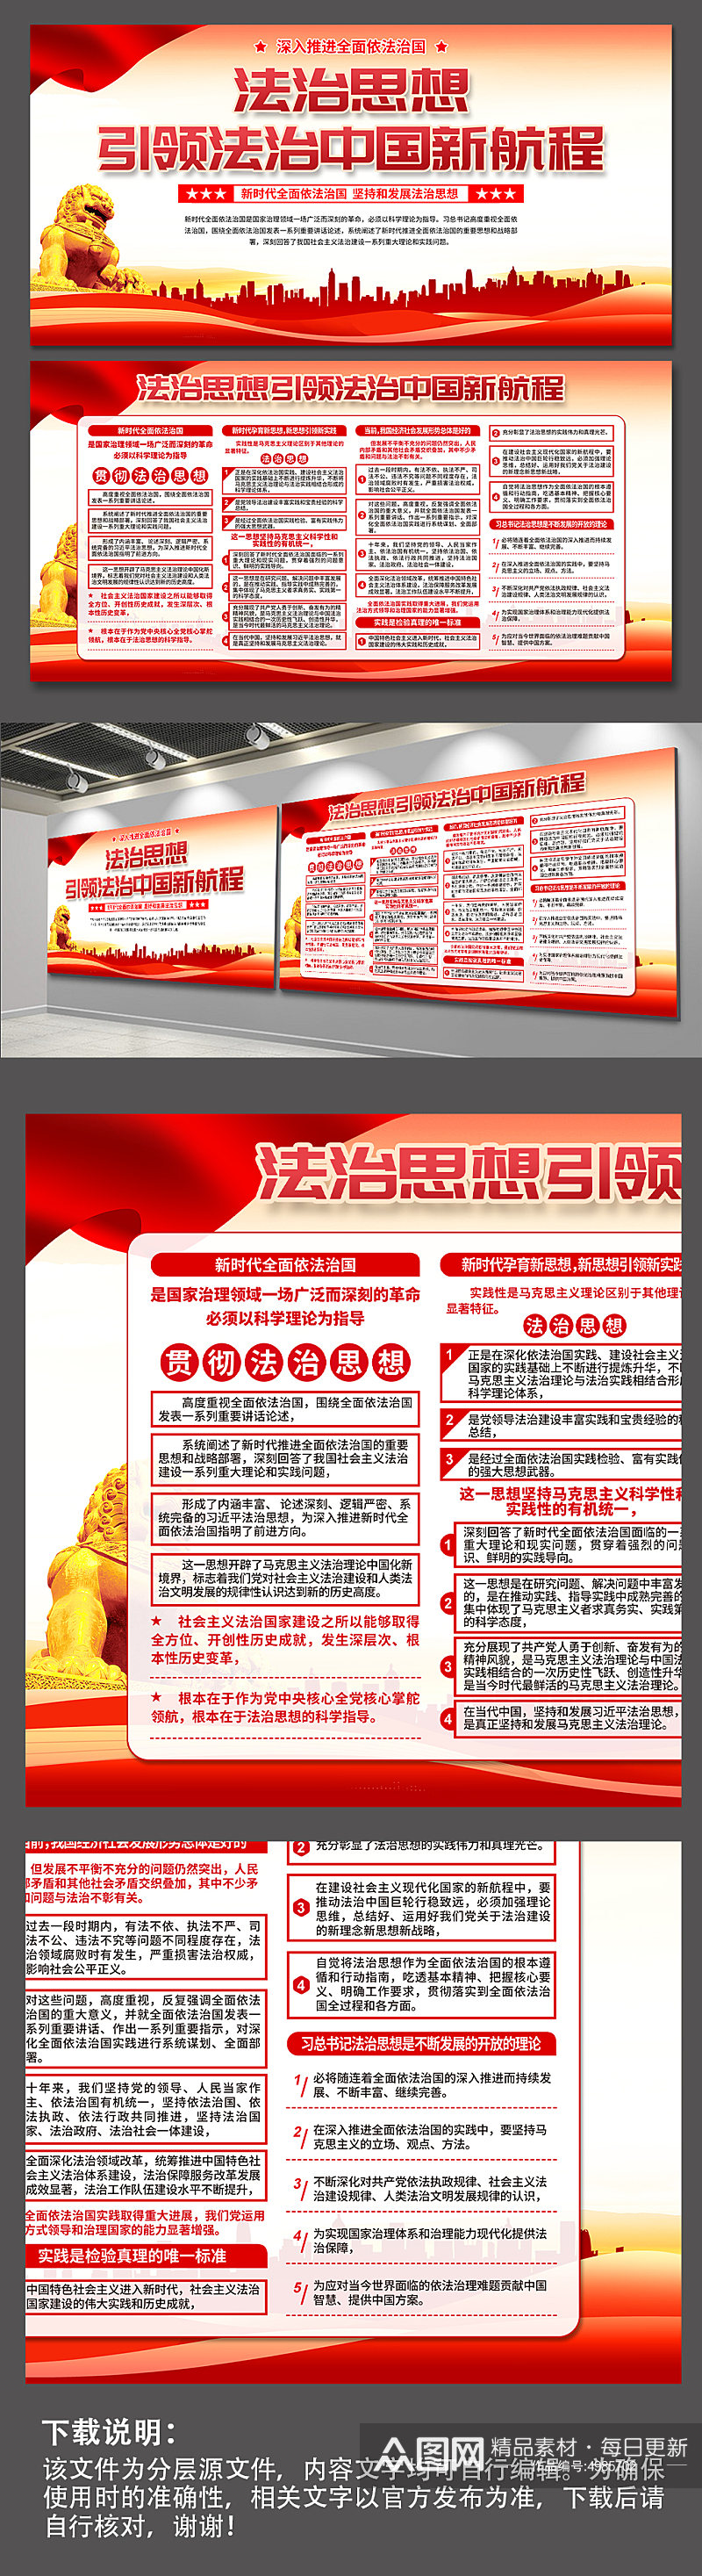 红色法治思想引领法治中国新航程党建展板素材